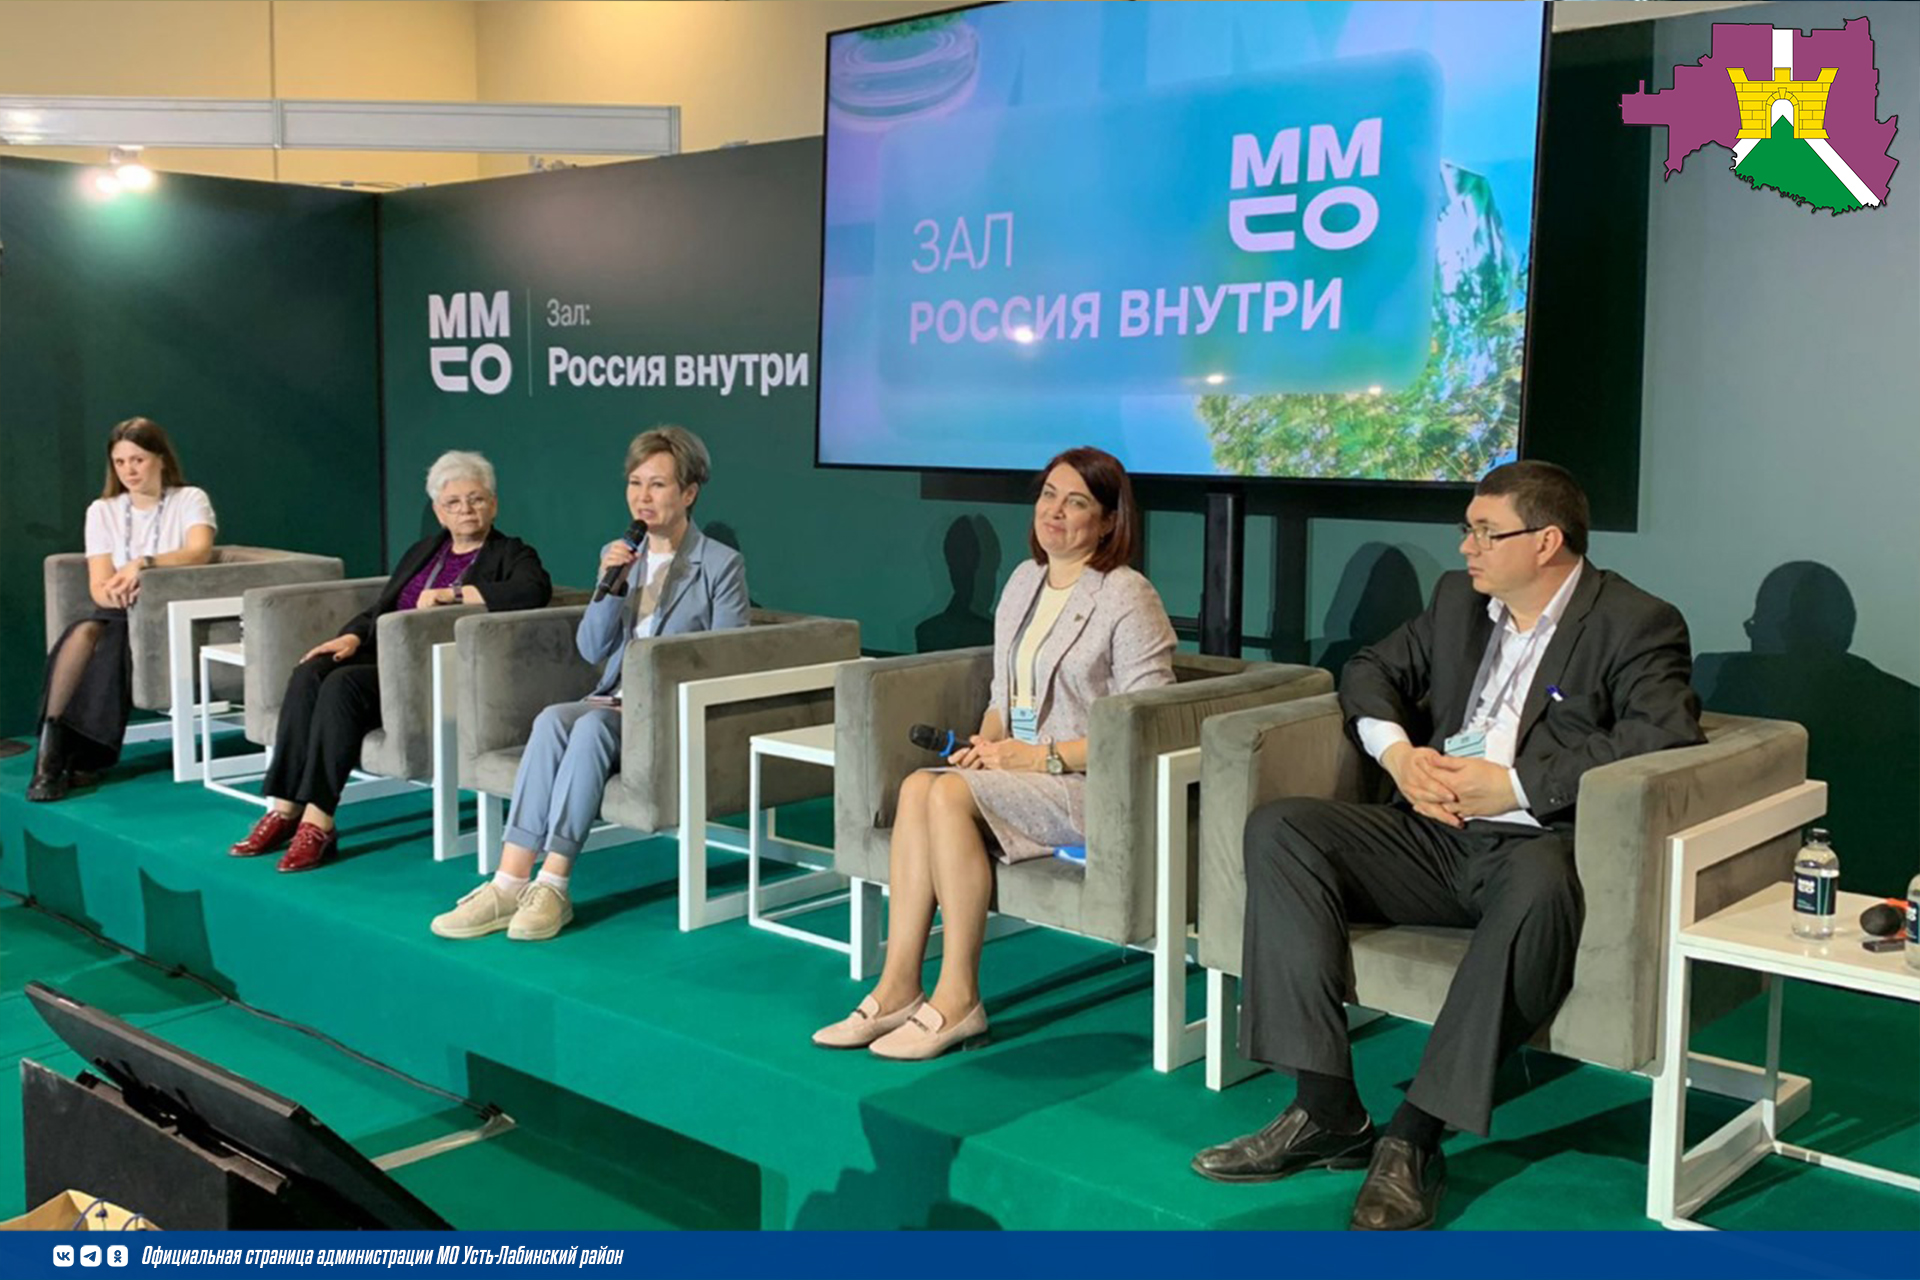 Усть-Лабинский район представили в составе делегации от Краснодарского края на Московском международном салоне образования